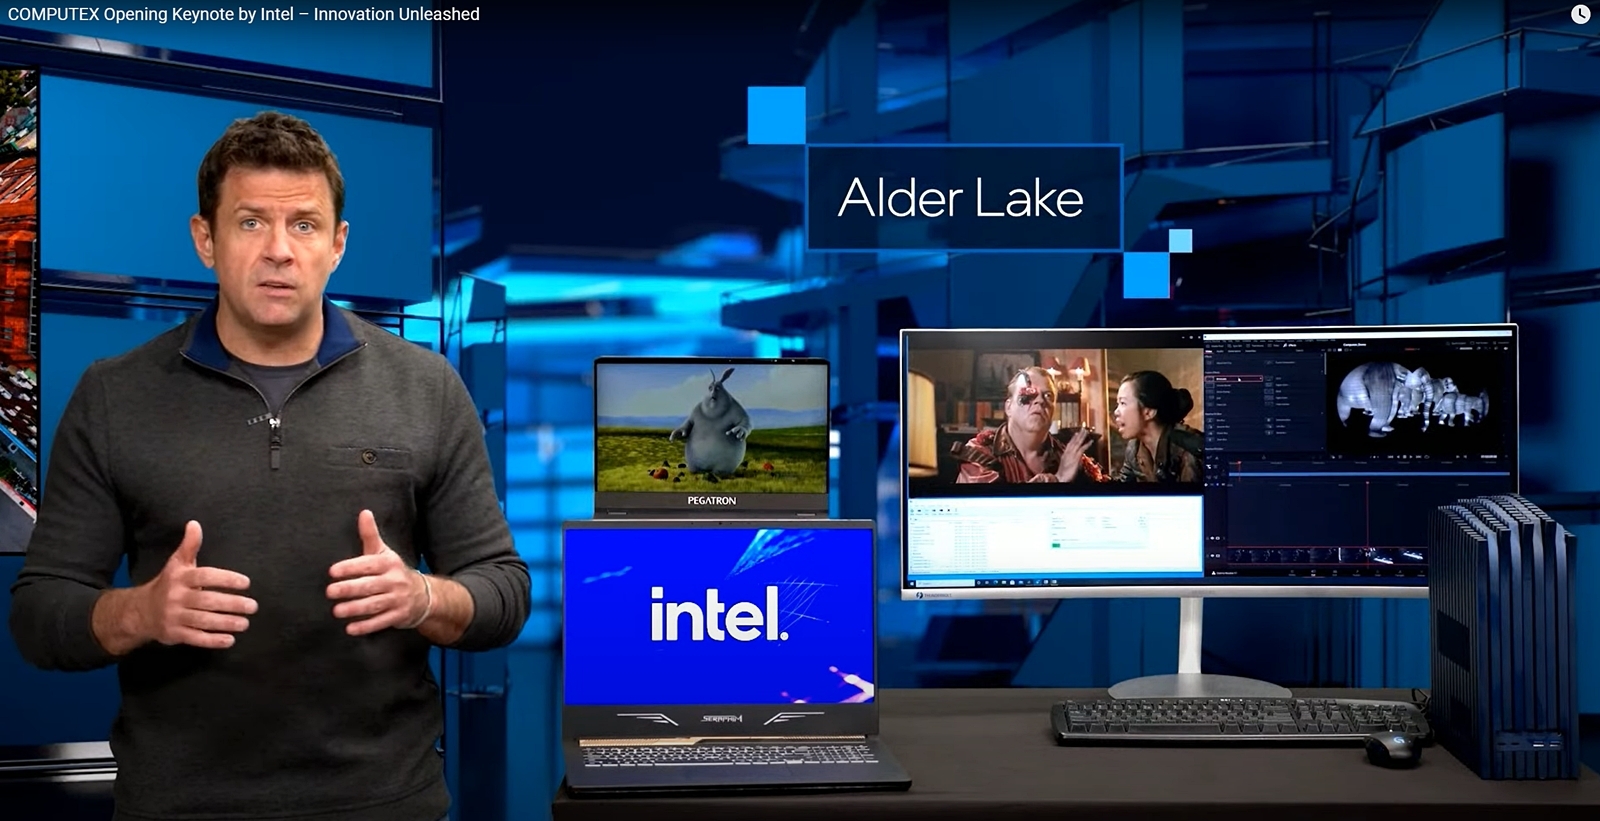 Alder Lakeの試作チップが載ったデスクトップPC上とノートPCでWindowsが稼働している様子を公開 （出所：COMPUTEX TAIPEI 2021の基調講演ビデオからキャプチャー）